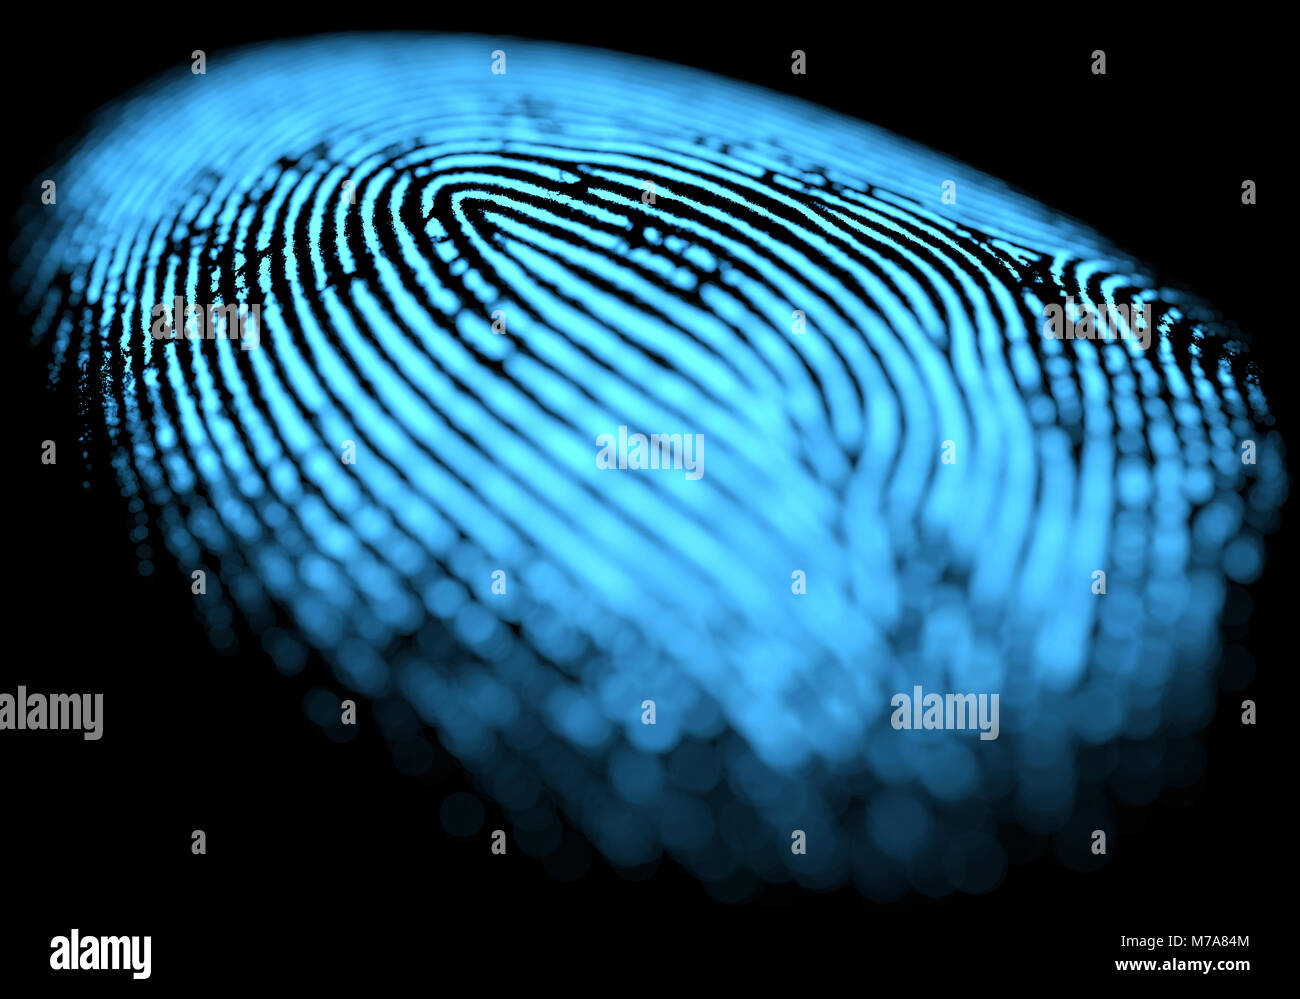 Fingerprint, illustration. Stock Photo